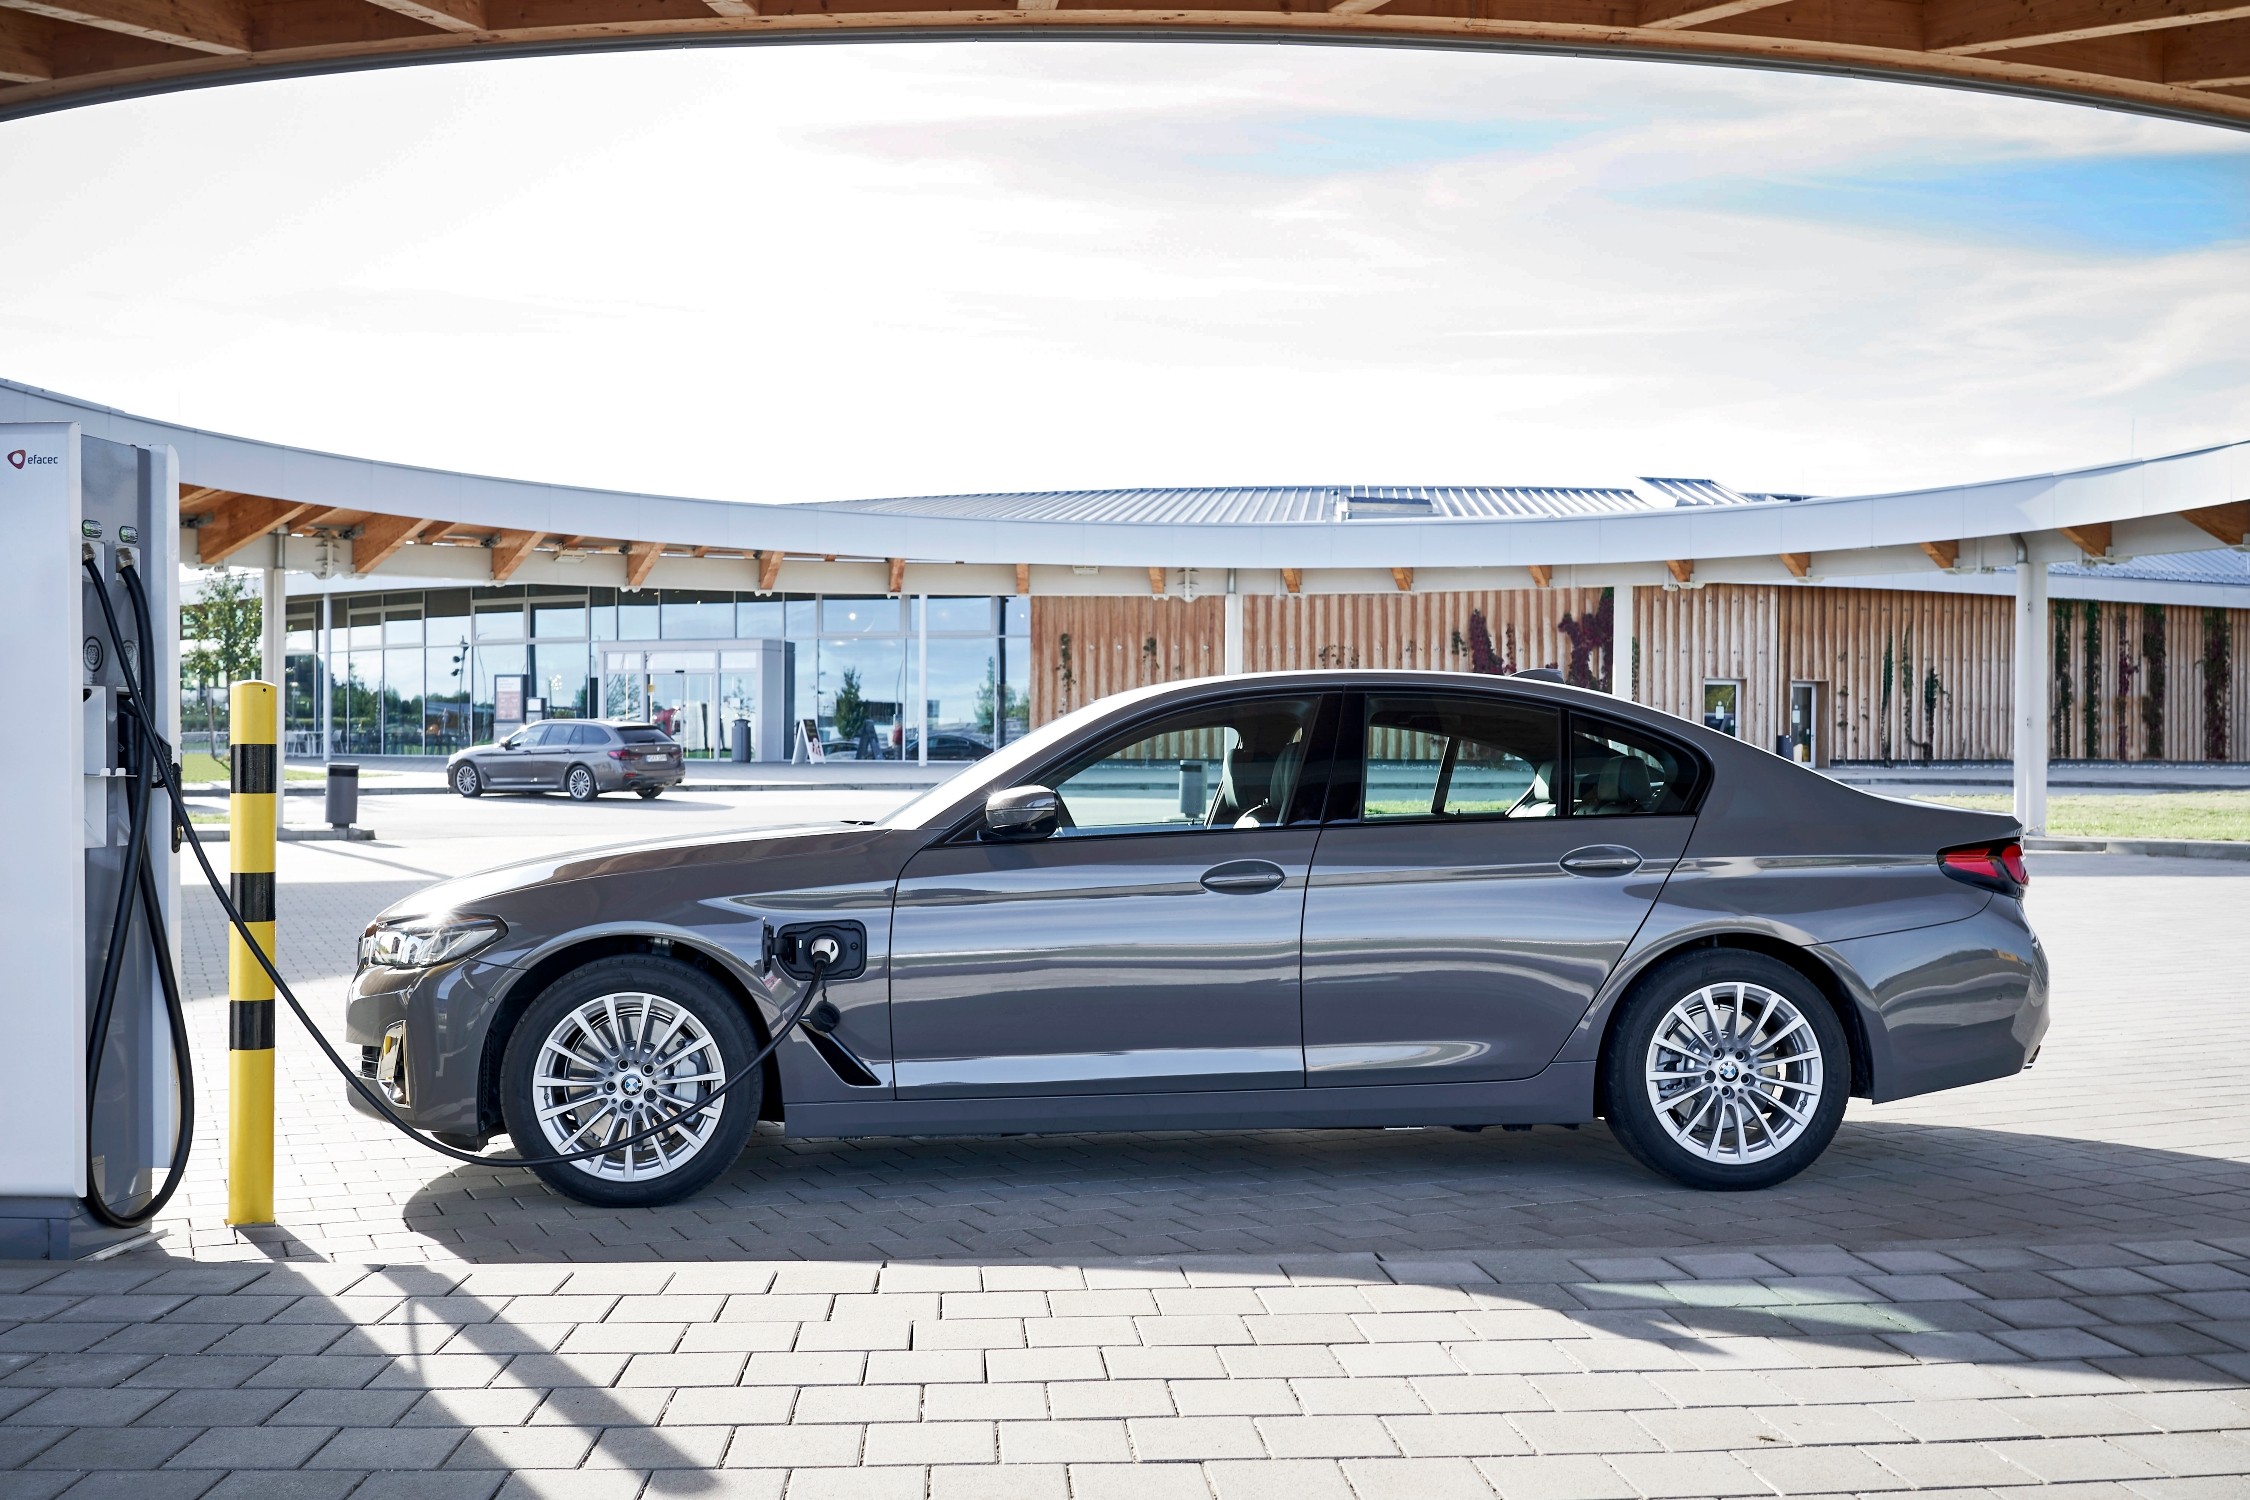 Les immatriculations de voitures ont baissé d'un quart, BMW est numéro un en Belgique